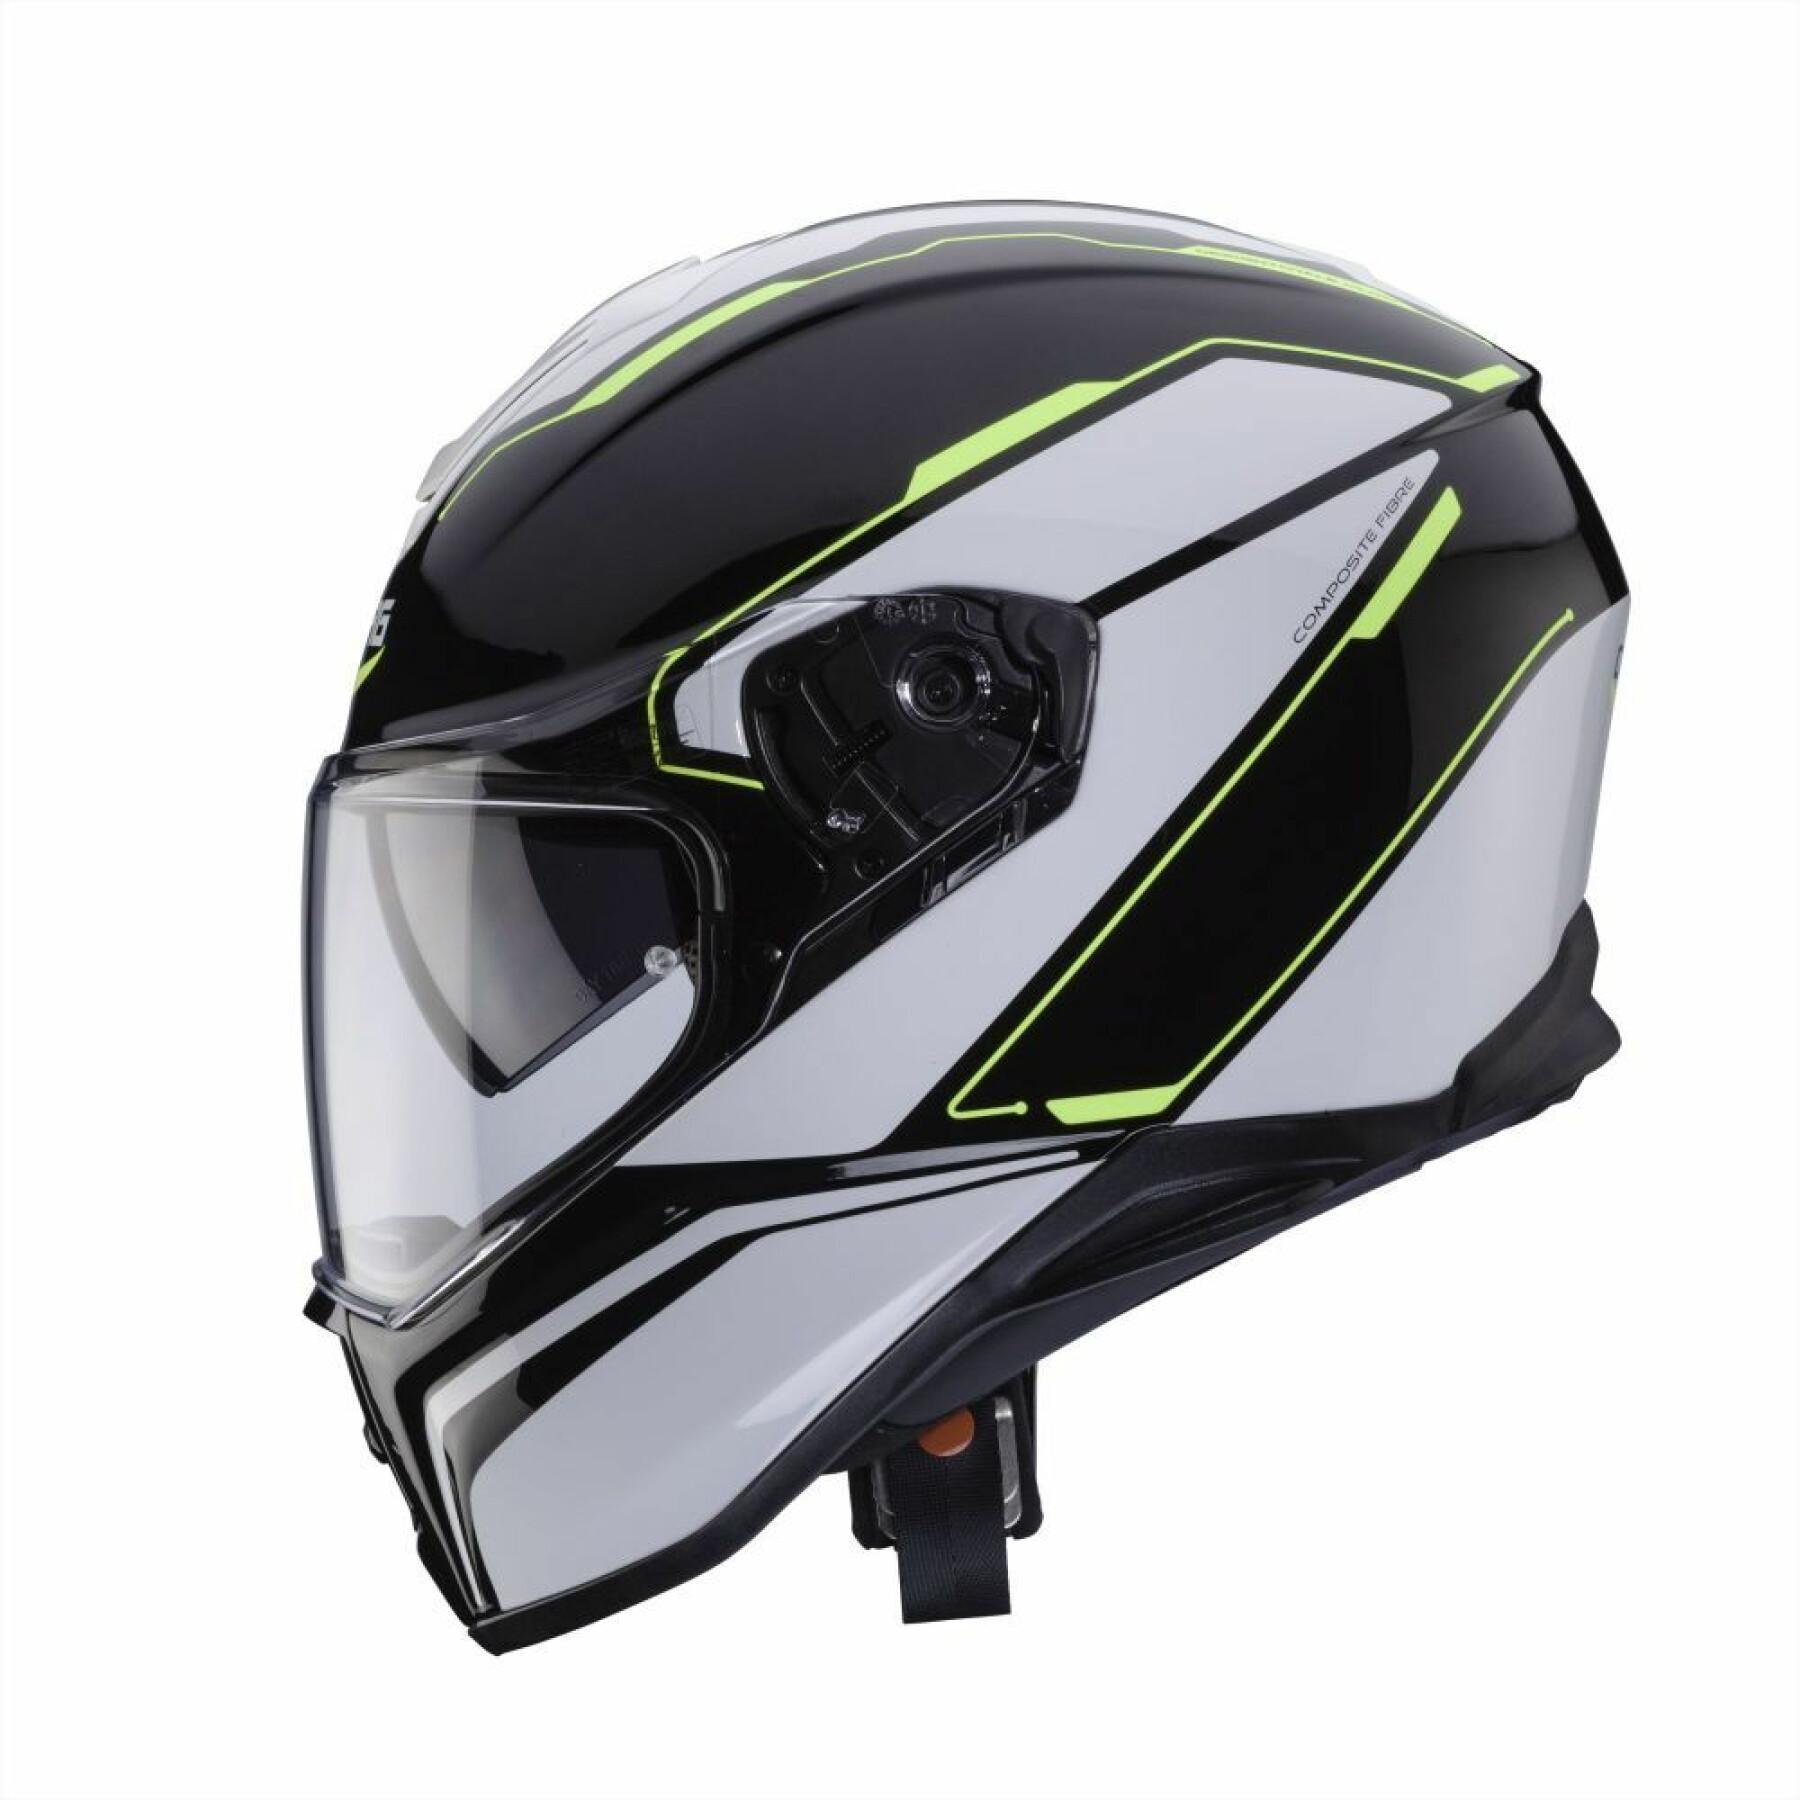 Full face motorcycle helmet Caberg drift flux